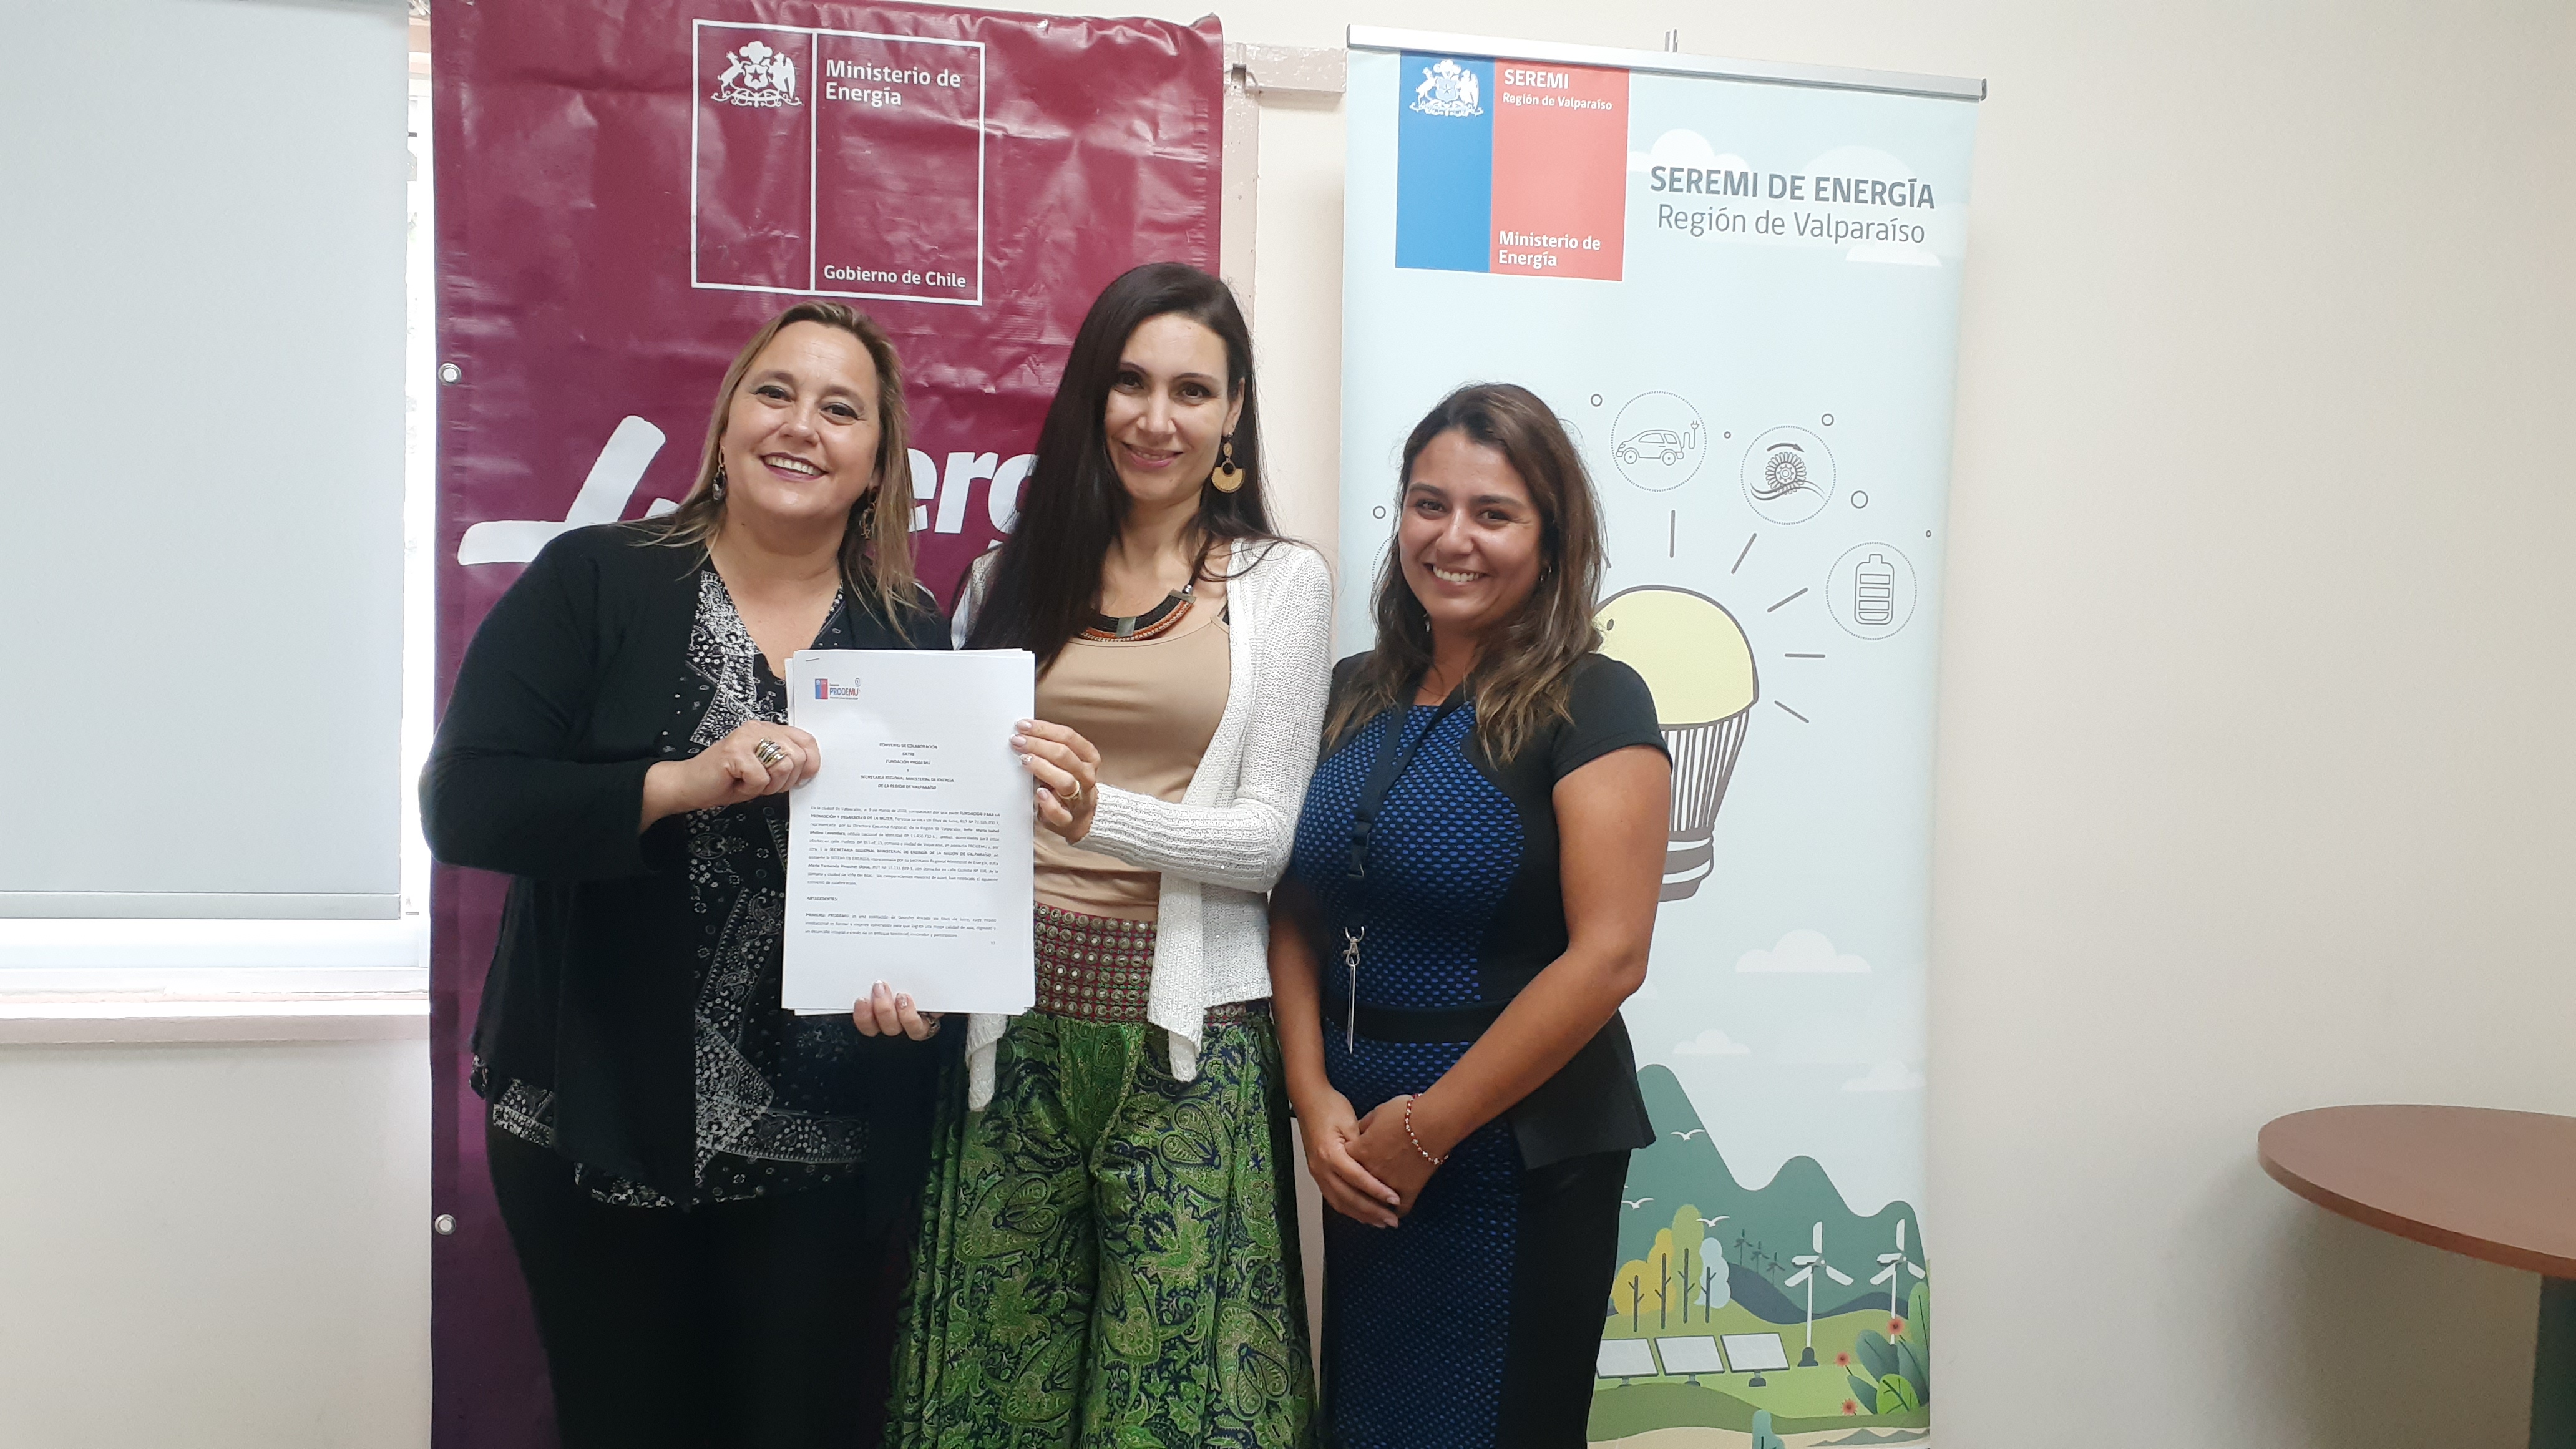 Ministerio de Energía y PRODEMU firman convenio para capacitar a mujeres en Eficiencia Energética, iniciativa nació desde la seremi de Valparaíso